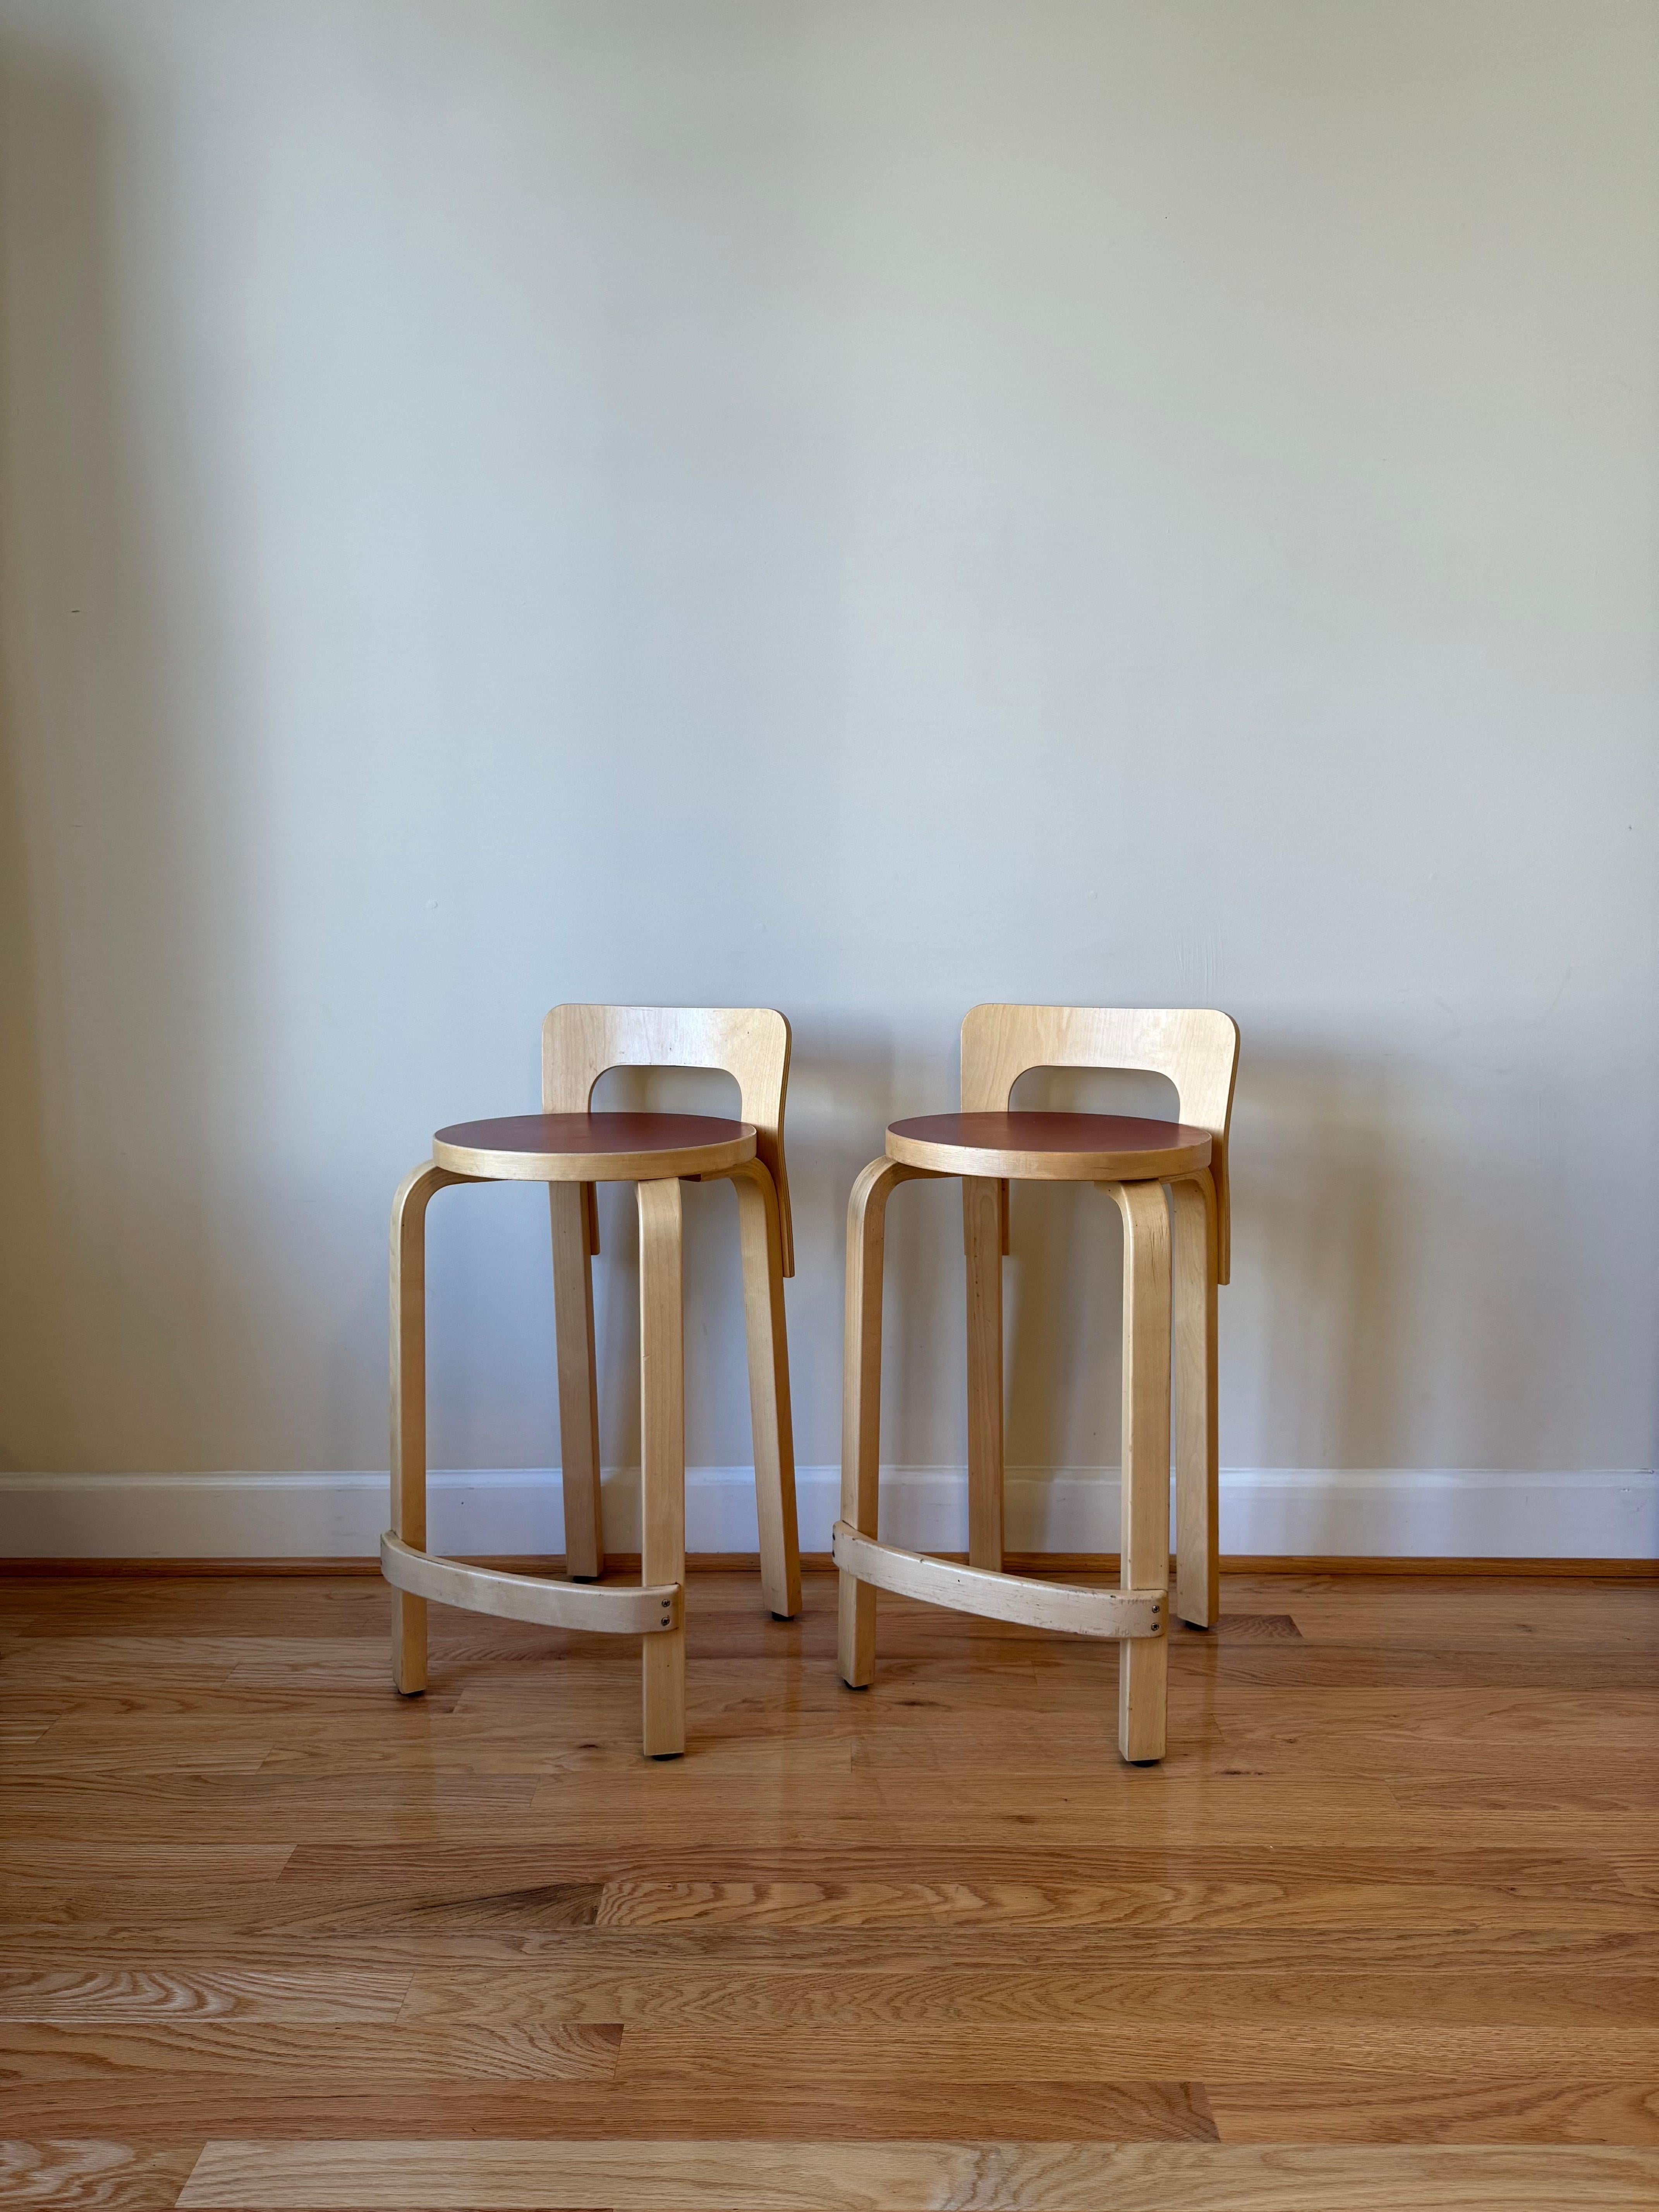 Der langbeinige High Chair K65 von Alvar Aalto hat die optimale Höhe für Stehtische und Bartresen. Die niedrige Rückenlehne bietet genau die richtige Unterstützung für den Rücken, und die gebogene Schiene dient als perfekte Fußstütze. 
Als Teil der